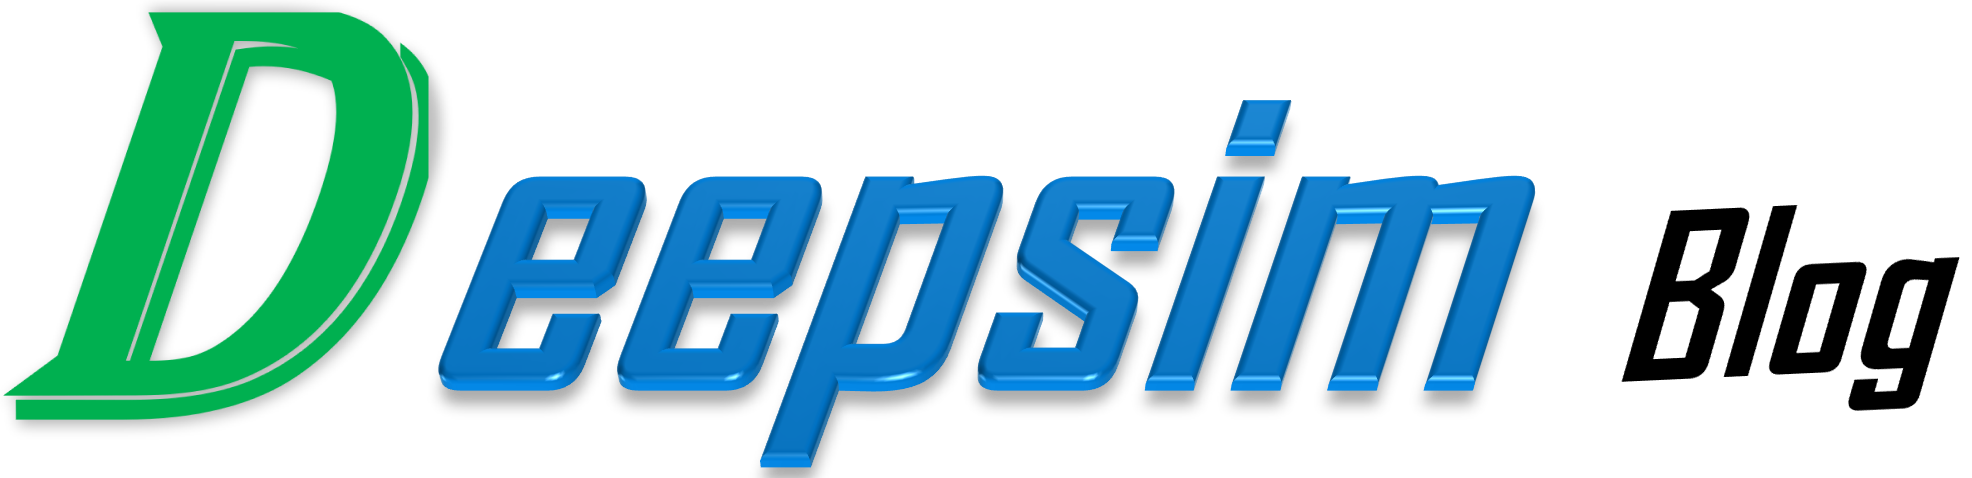 deepsim-blog-logo